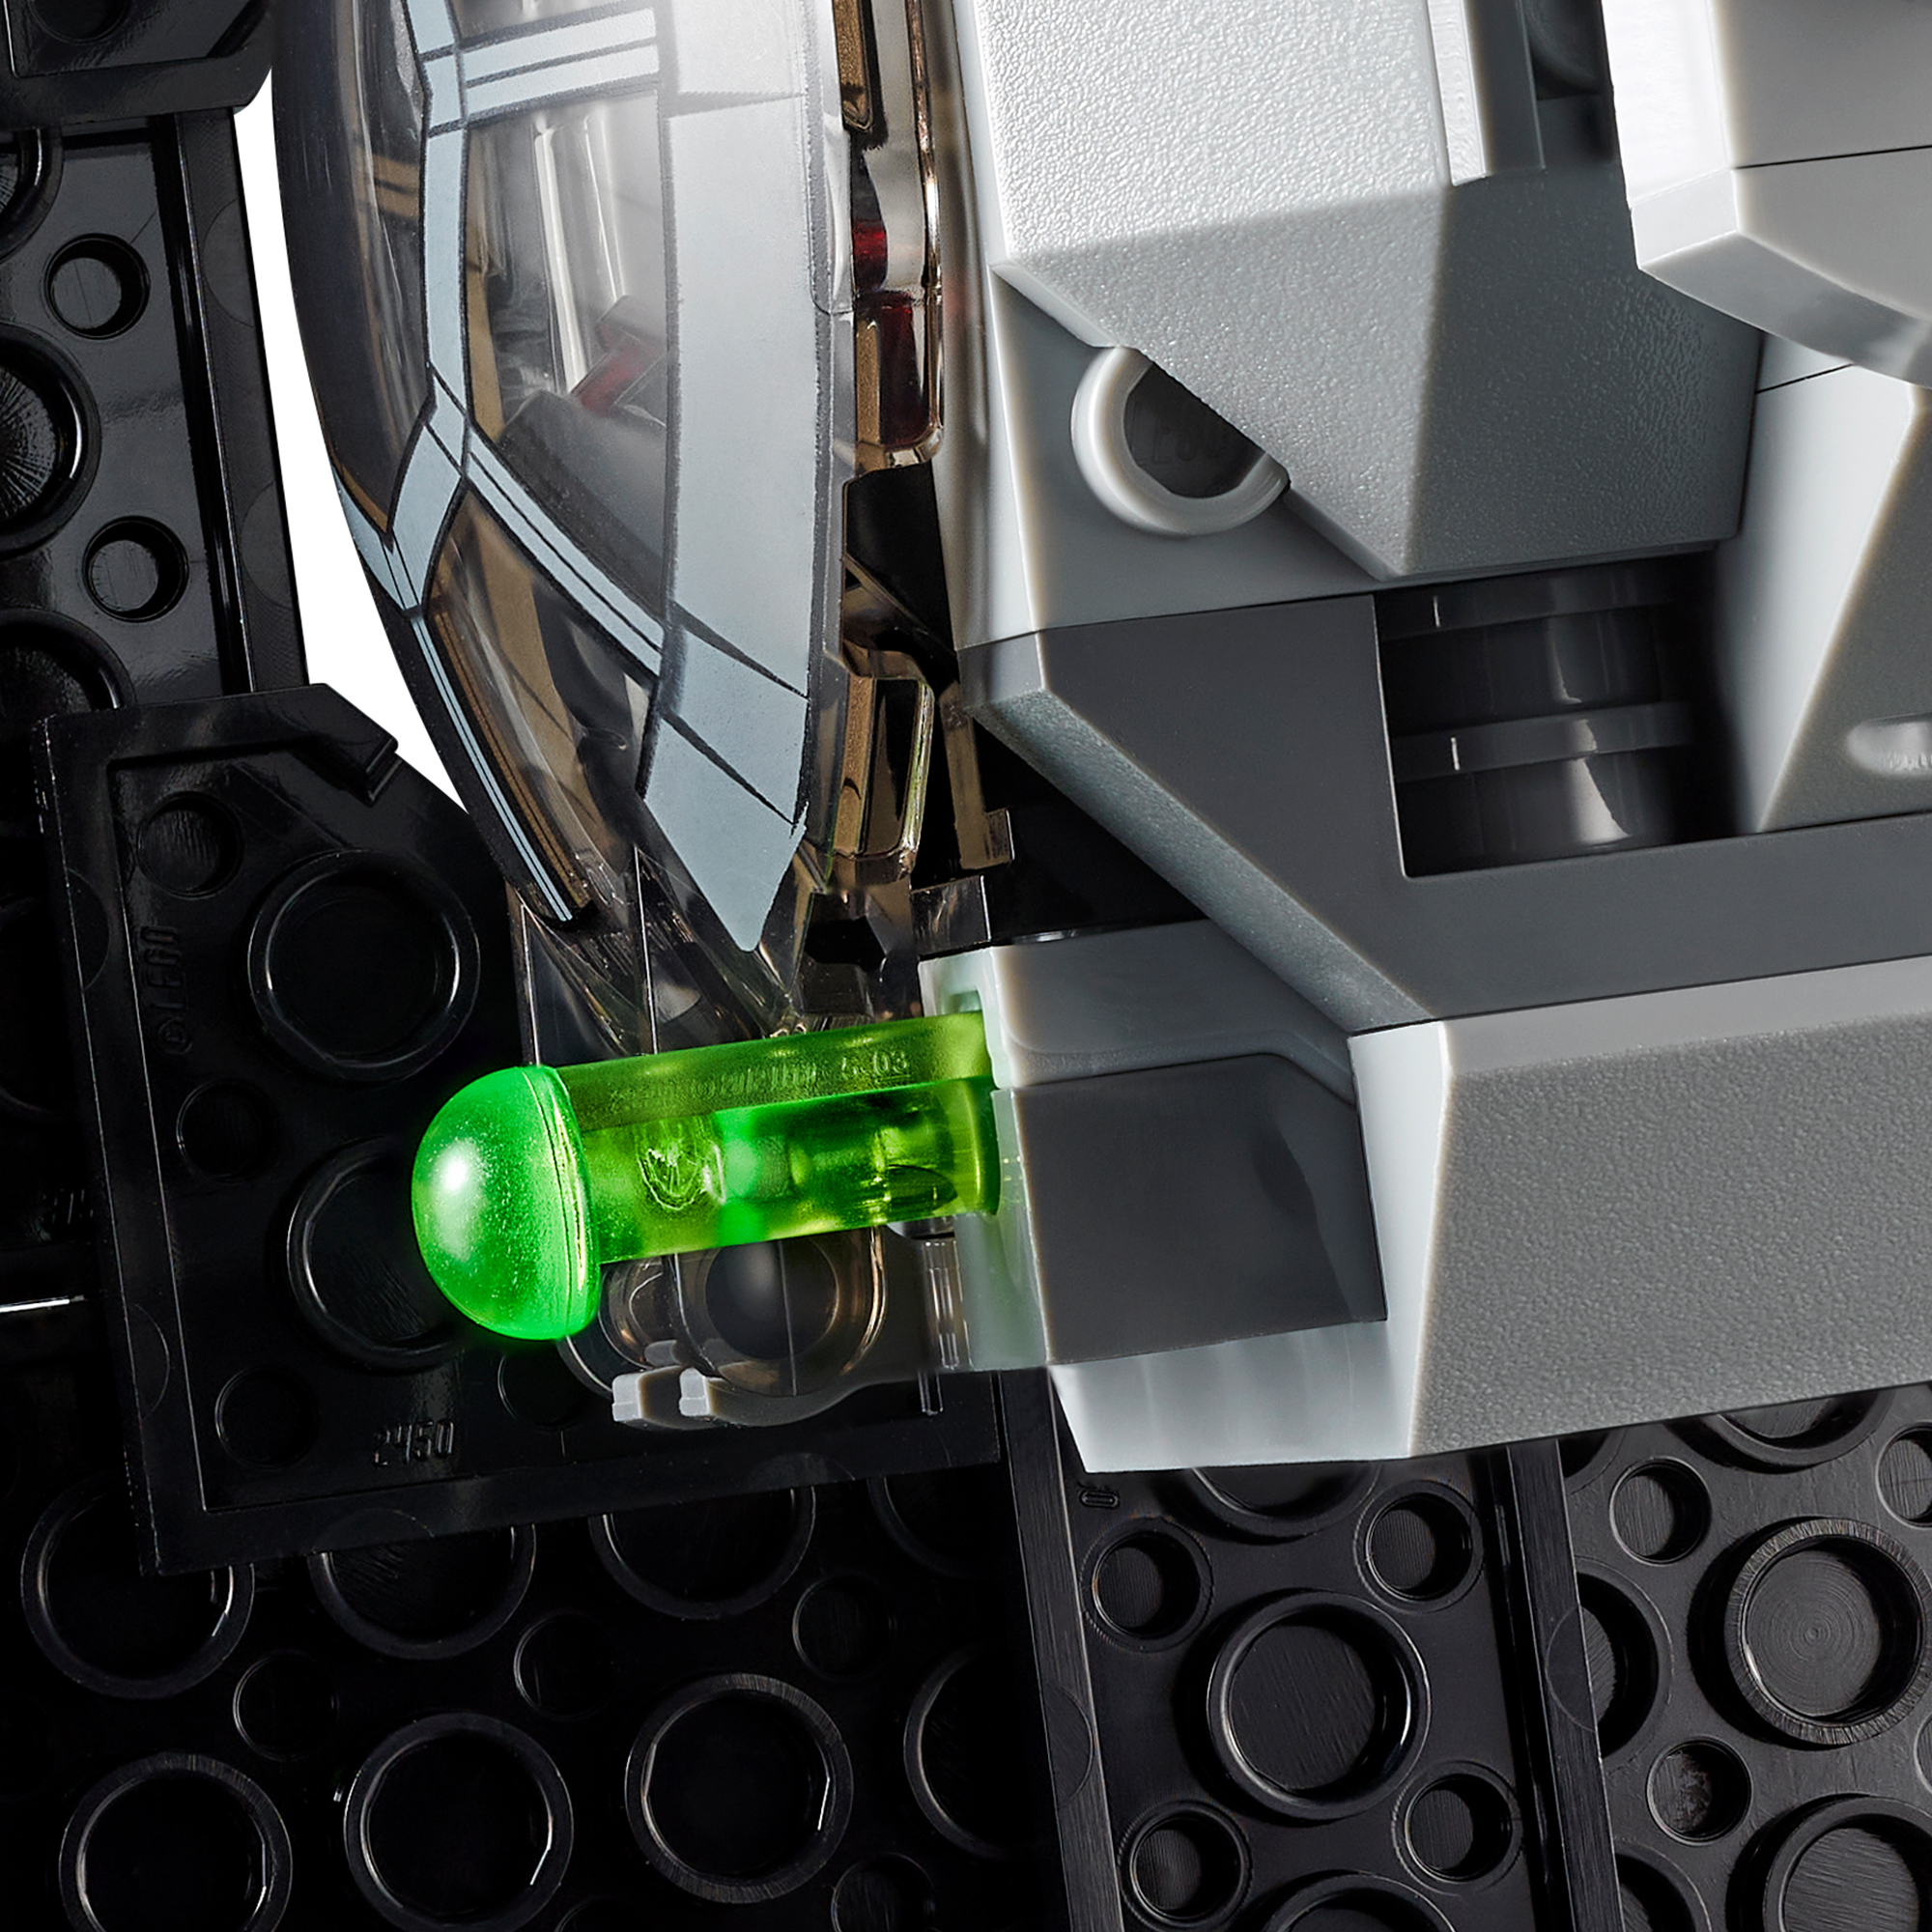 LEGO Star Wars Imperial Fighter™ Mehrfarbig TIE 75300 Bausatz